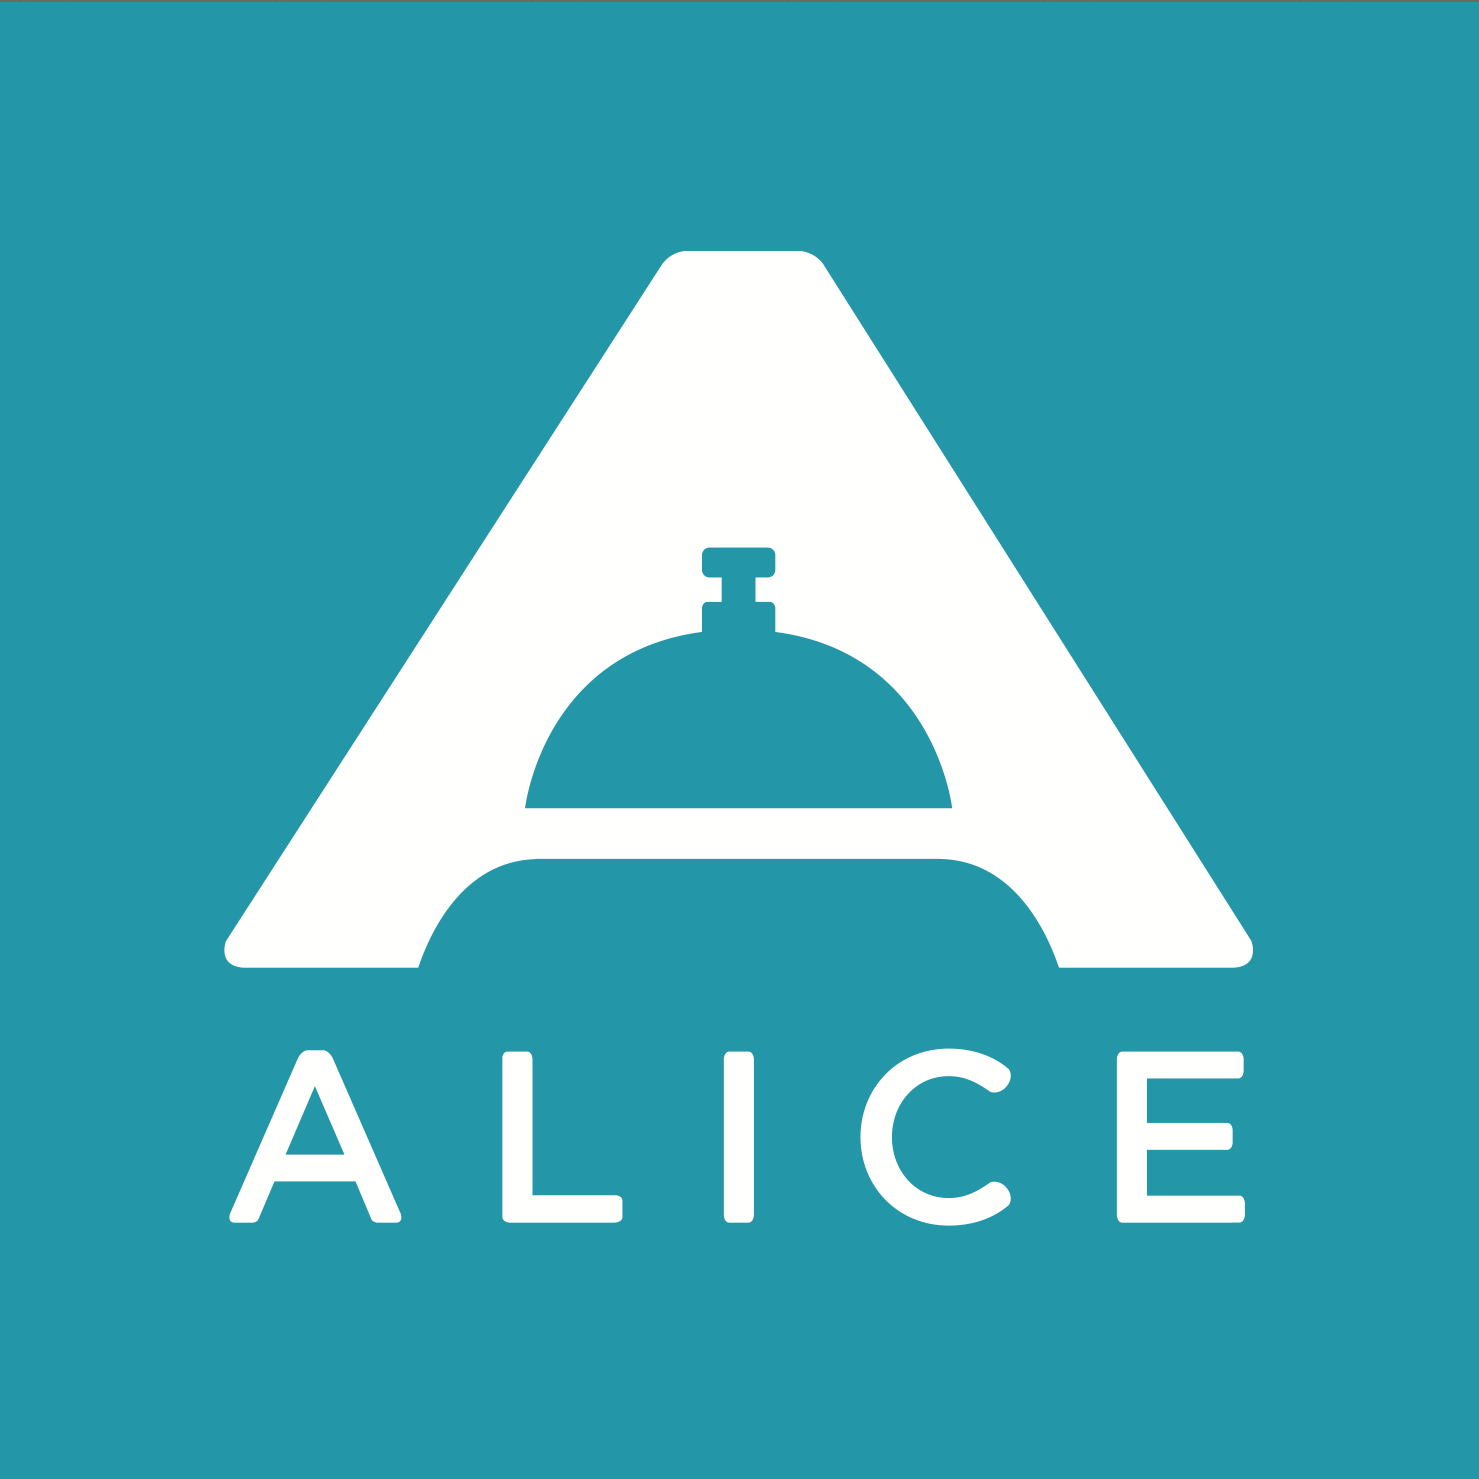 Alice HD wallpapers, Desktop wallpaper - most viewed